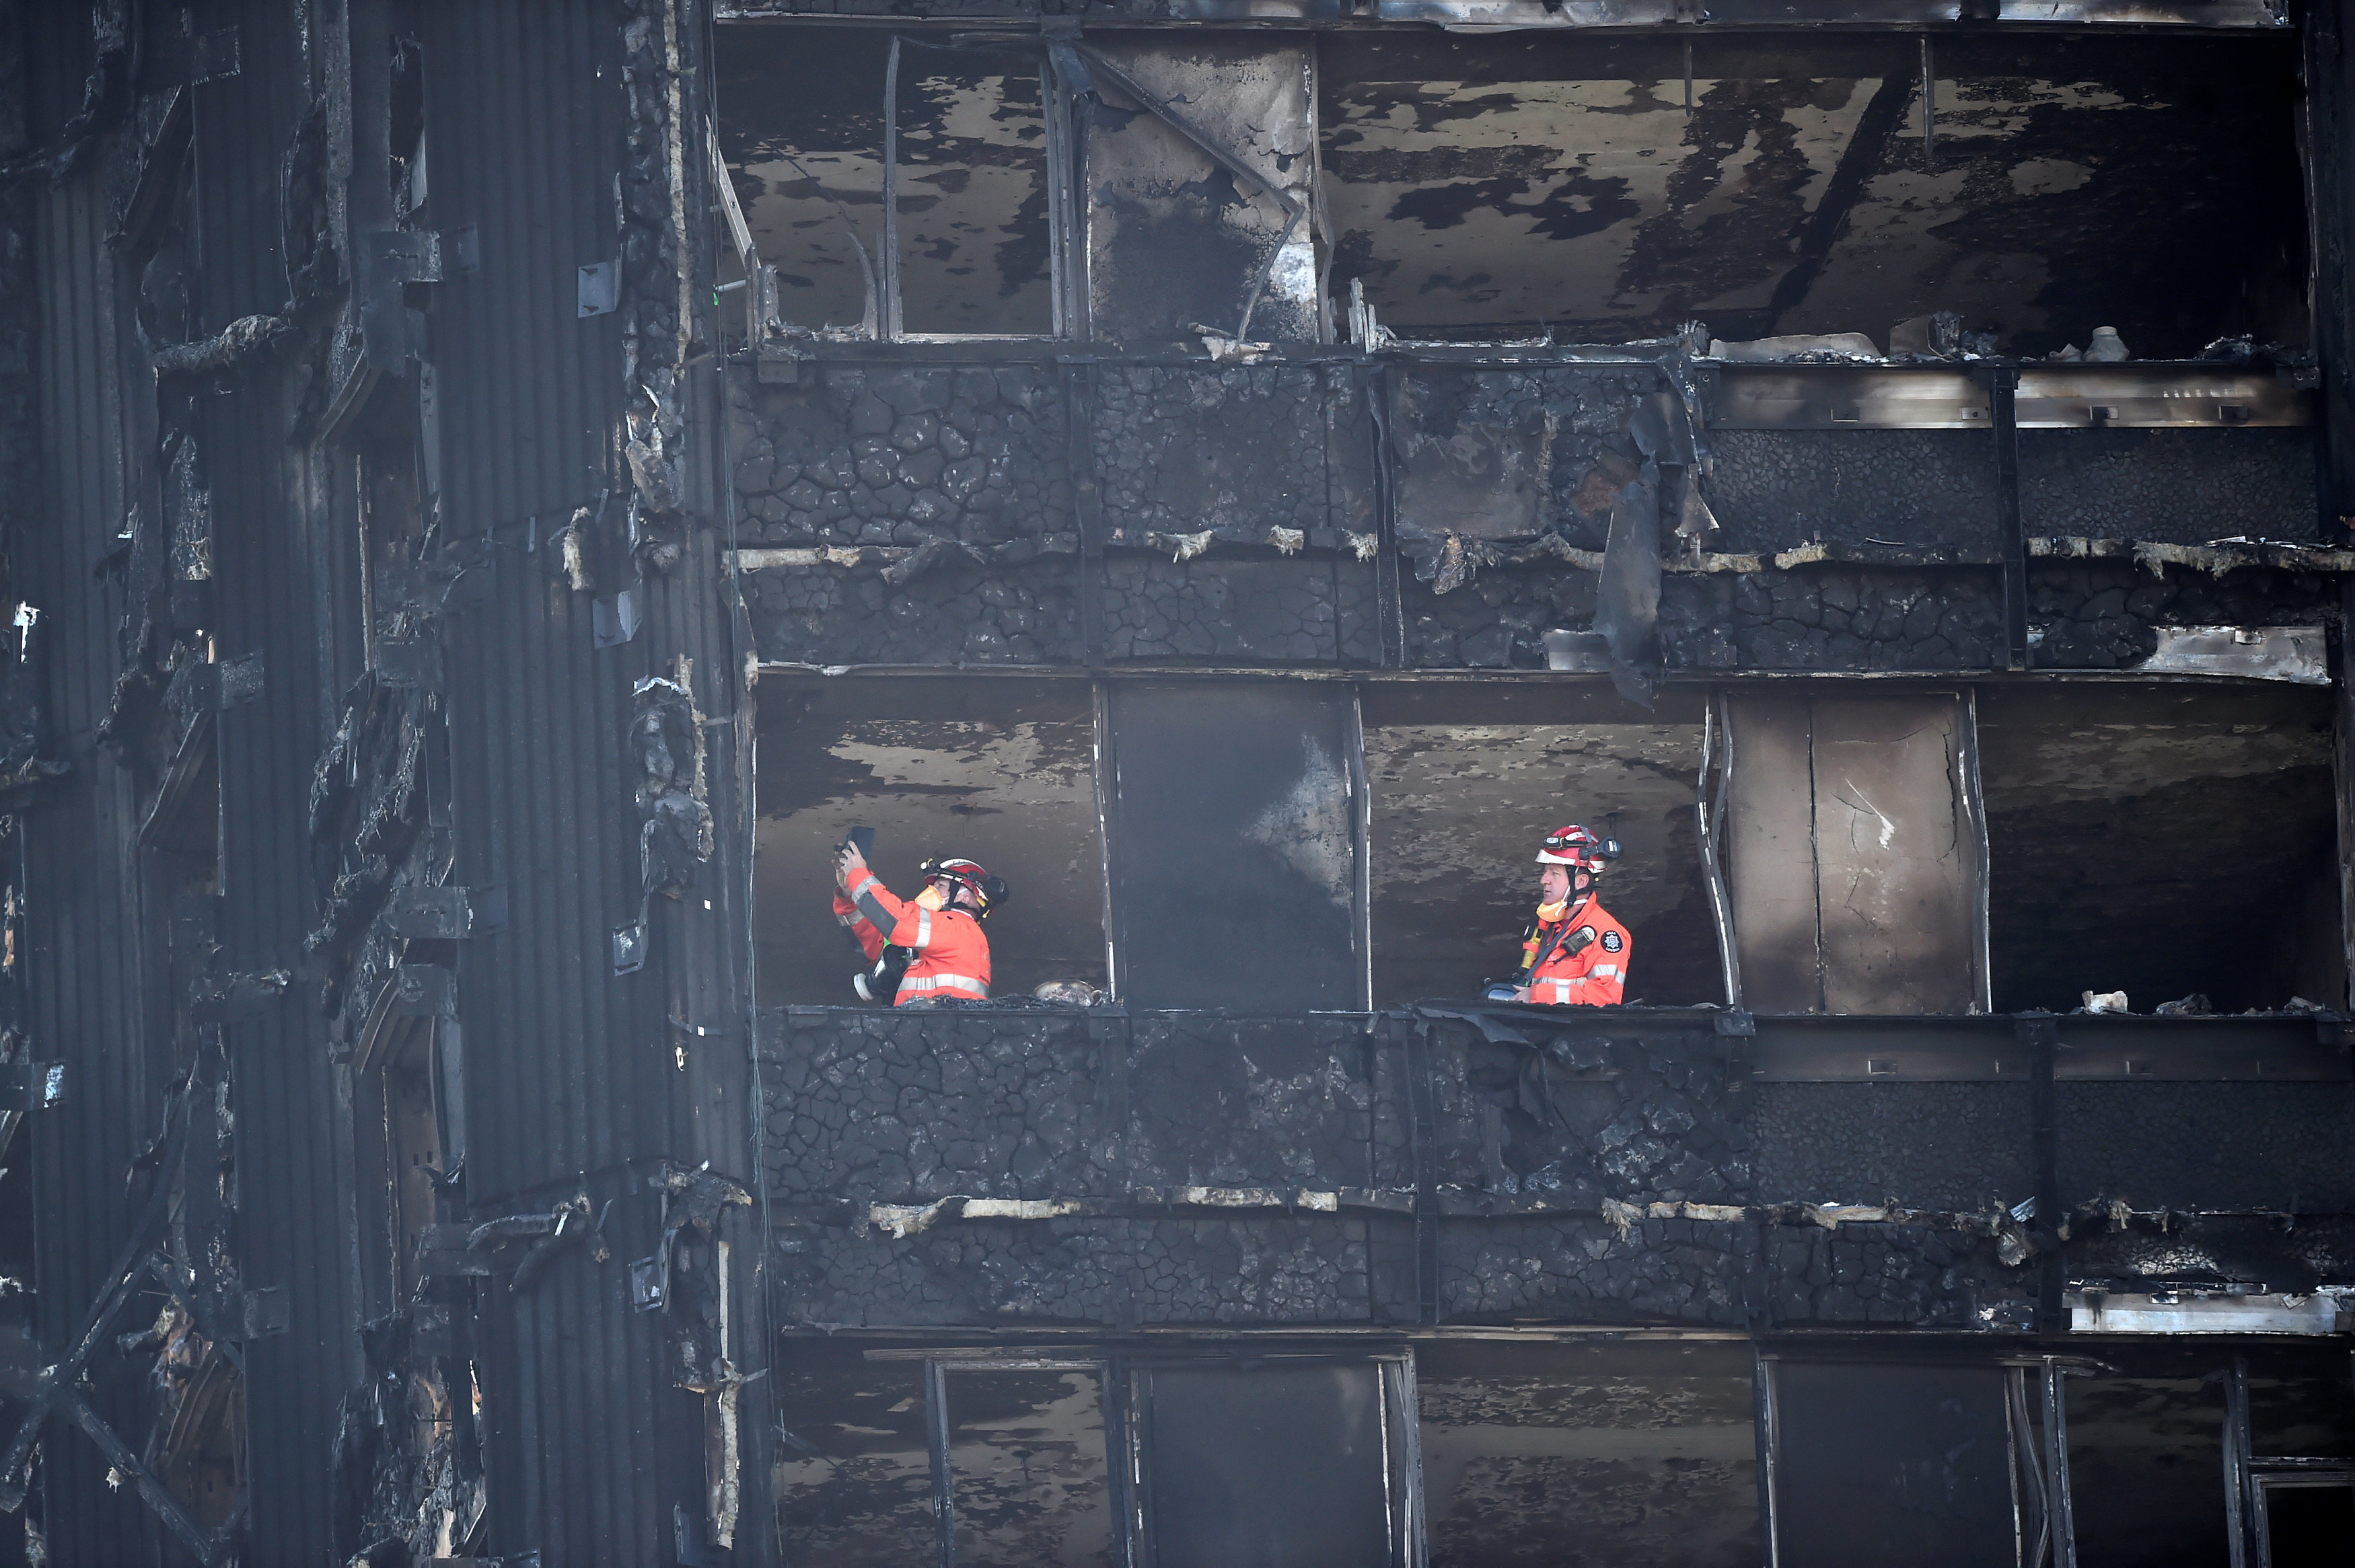 رجال الطوارئ يعاينون البرج المحترق فى لندن